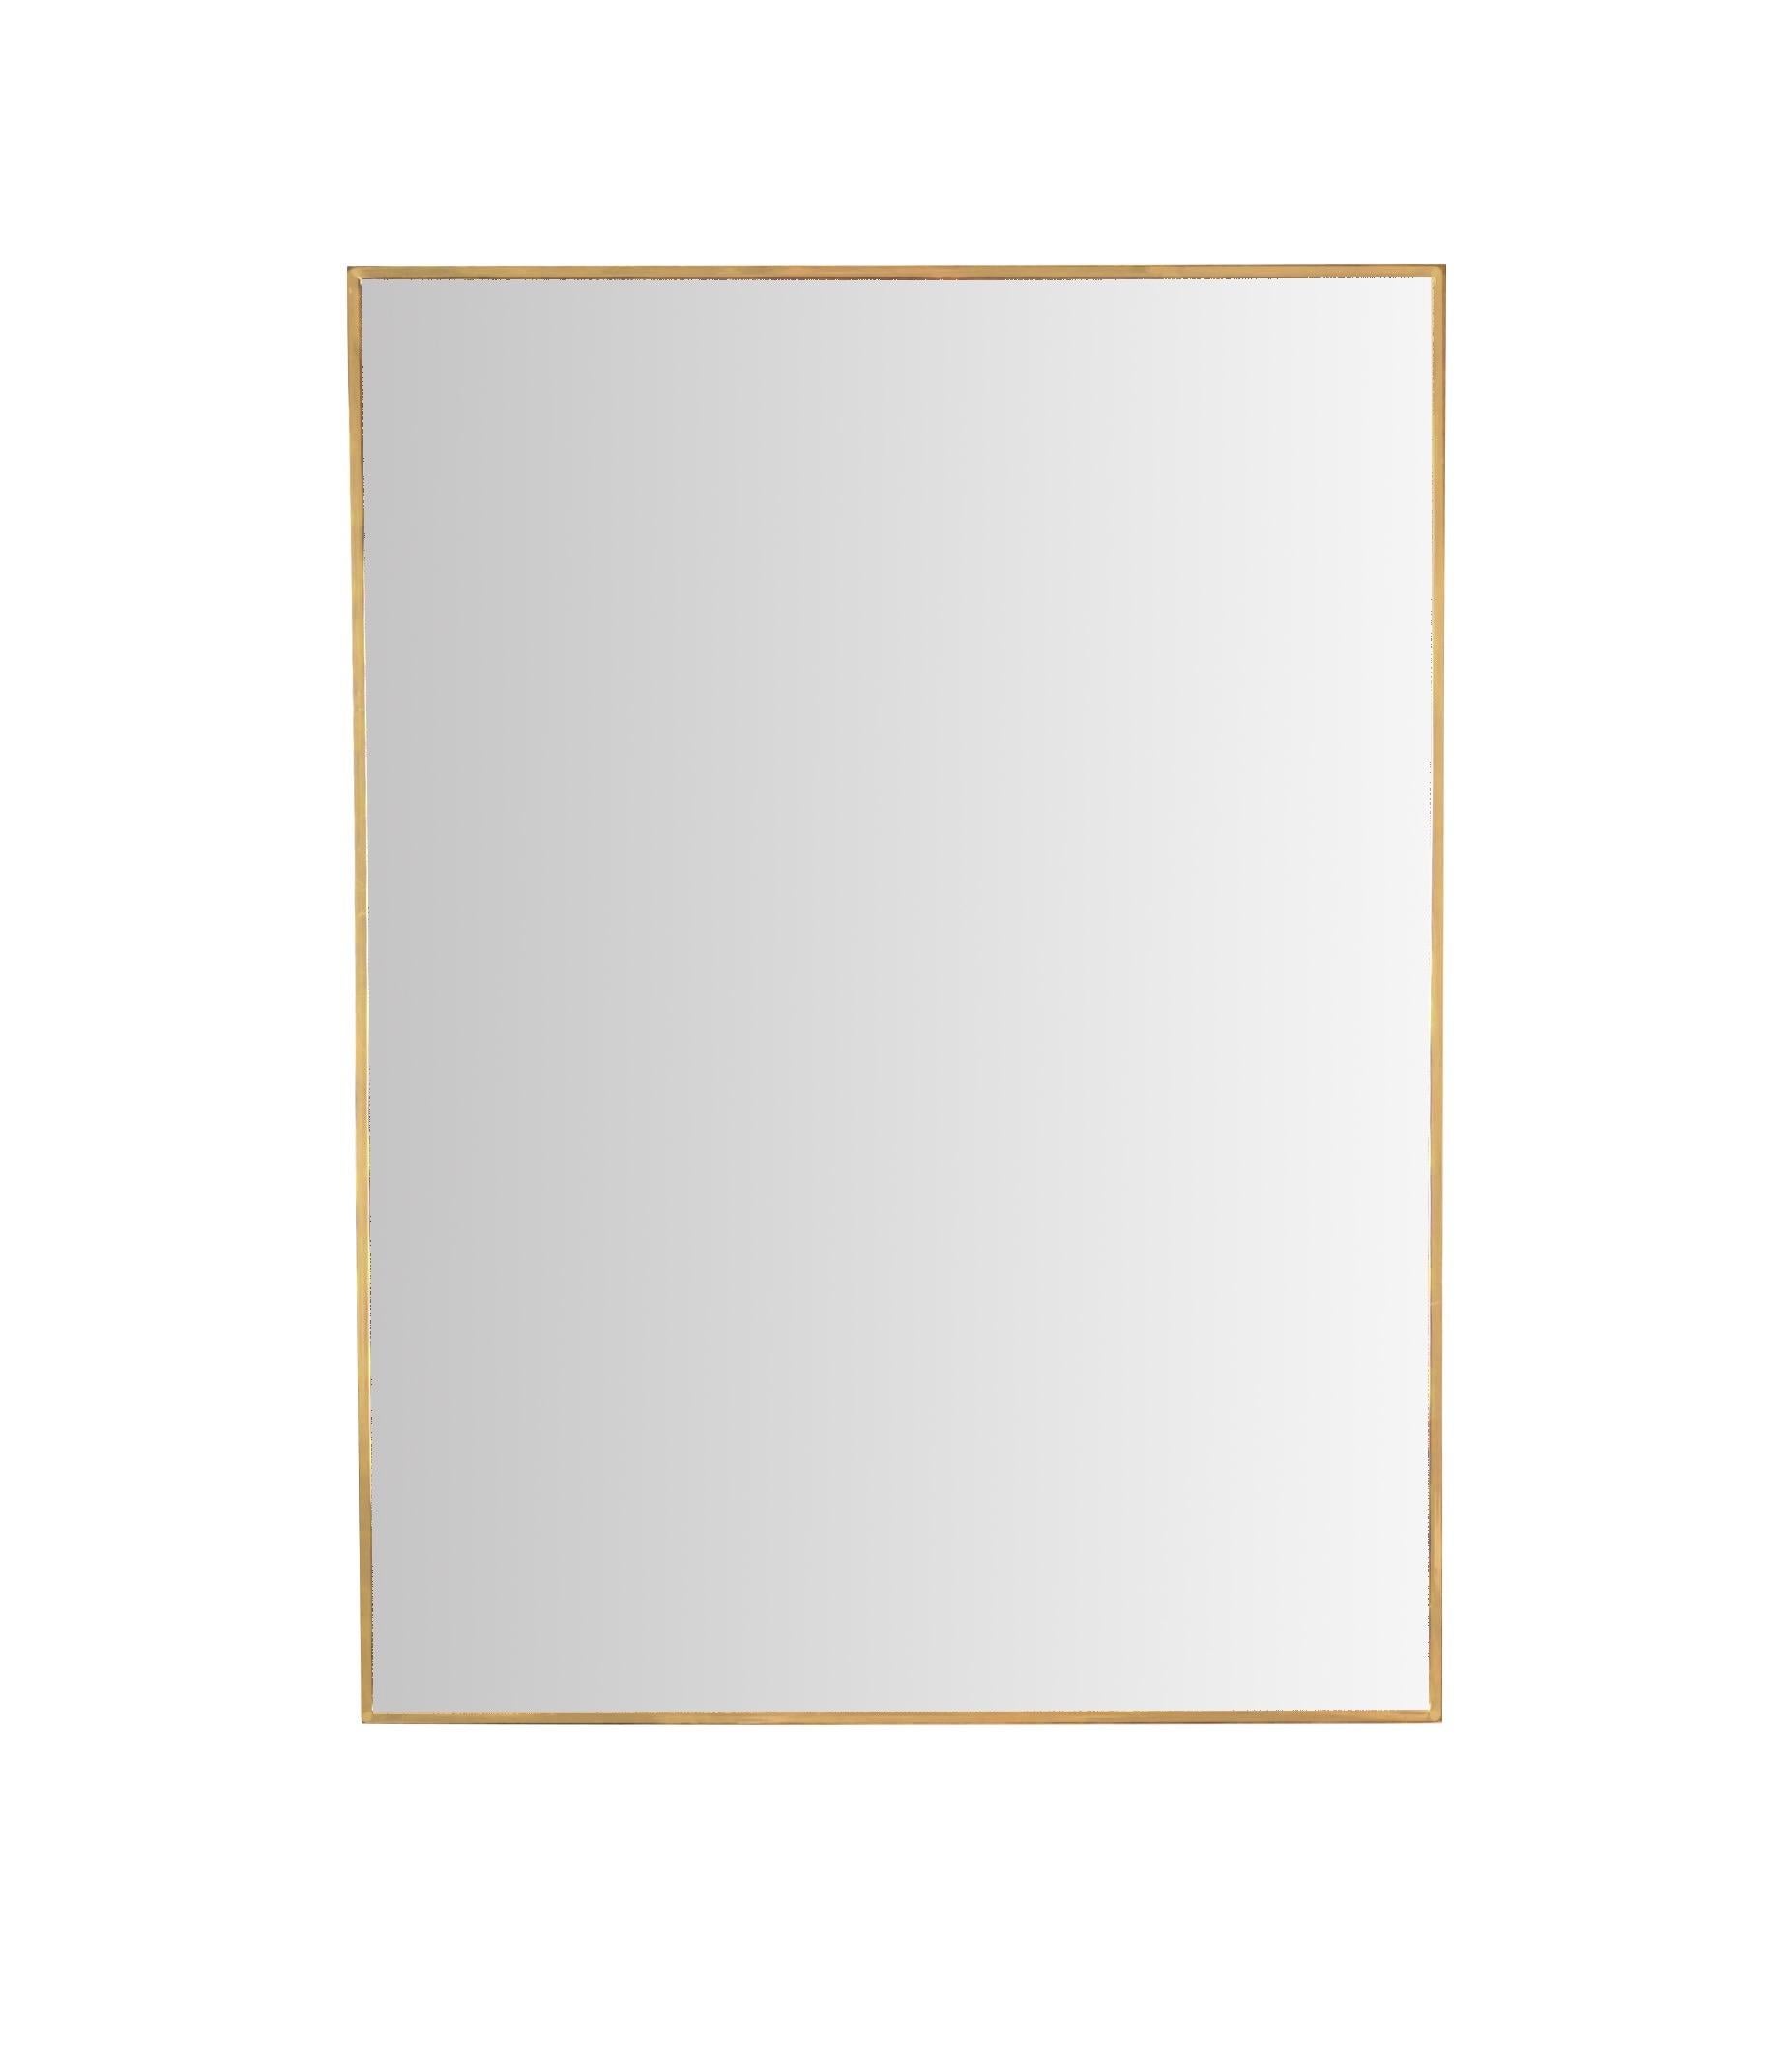 Schöner großer rechteckiger Spiegel mit massivem Messingrahmen. Dieser elegante Spiegel wurde in den 1950er Jahren in Italien hergestellt.

Dieser schöne Spiegel hat einen rechteckigen Rahmen aus massivem Messing, der ihn ziemlich schwer macht. Das